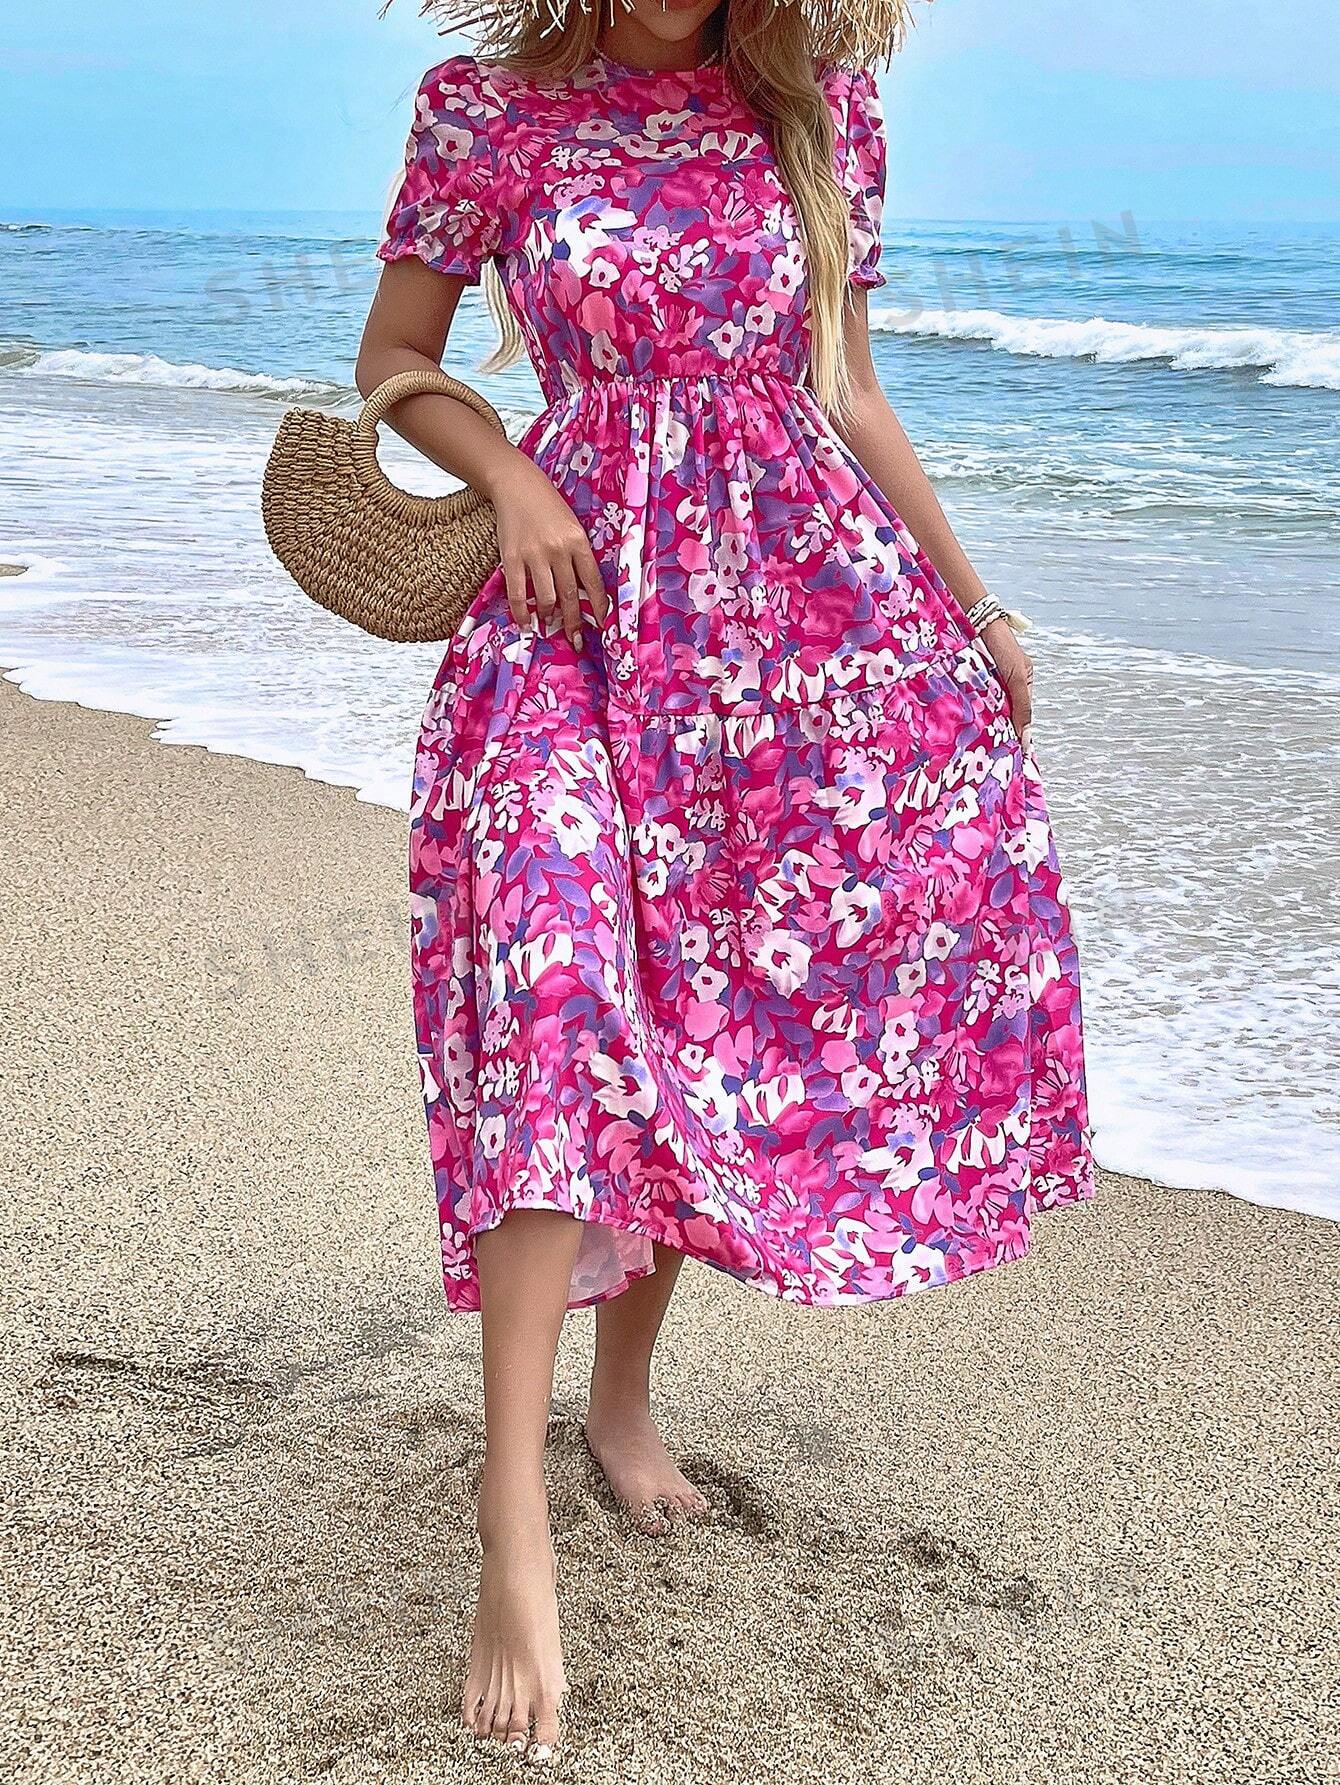 shein vcay женское платье с круглым вырезом и короткими рукавами пузырьками с цветочным принтом синий SHEIN VCAY Женское платье с круглым вырезом и короткими рукавами-пузырьками с цветочным принтом, фиолетовый